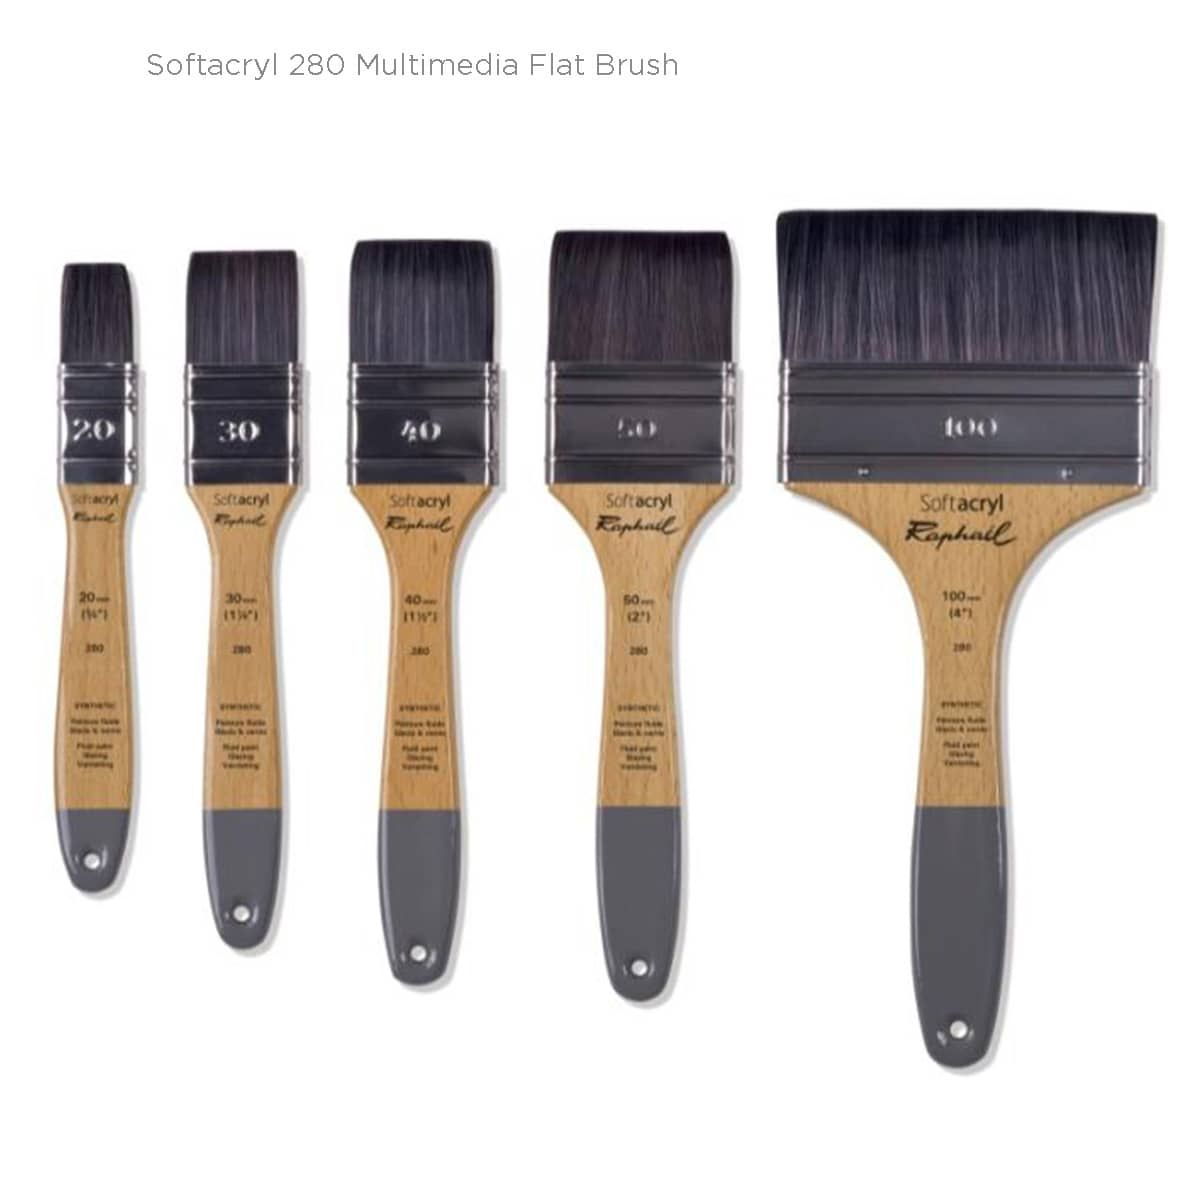 SoftAcryl 280 Multimedia Flat Brushes